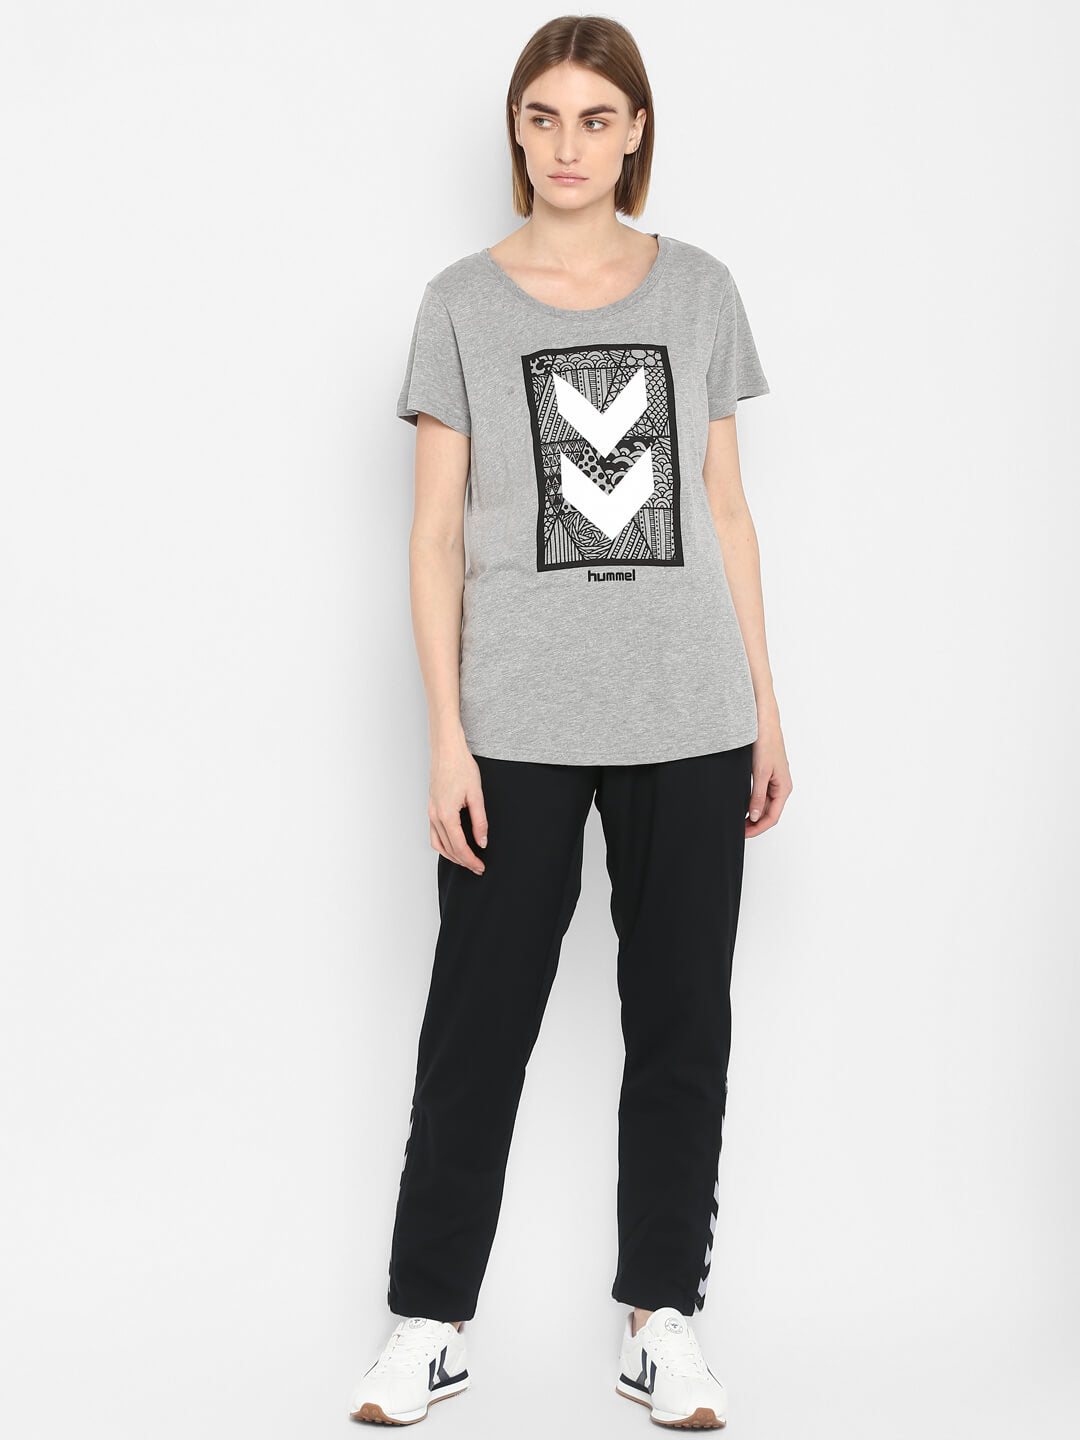 Isla Grey T-Shirt for Women